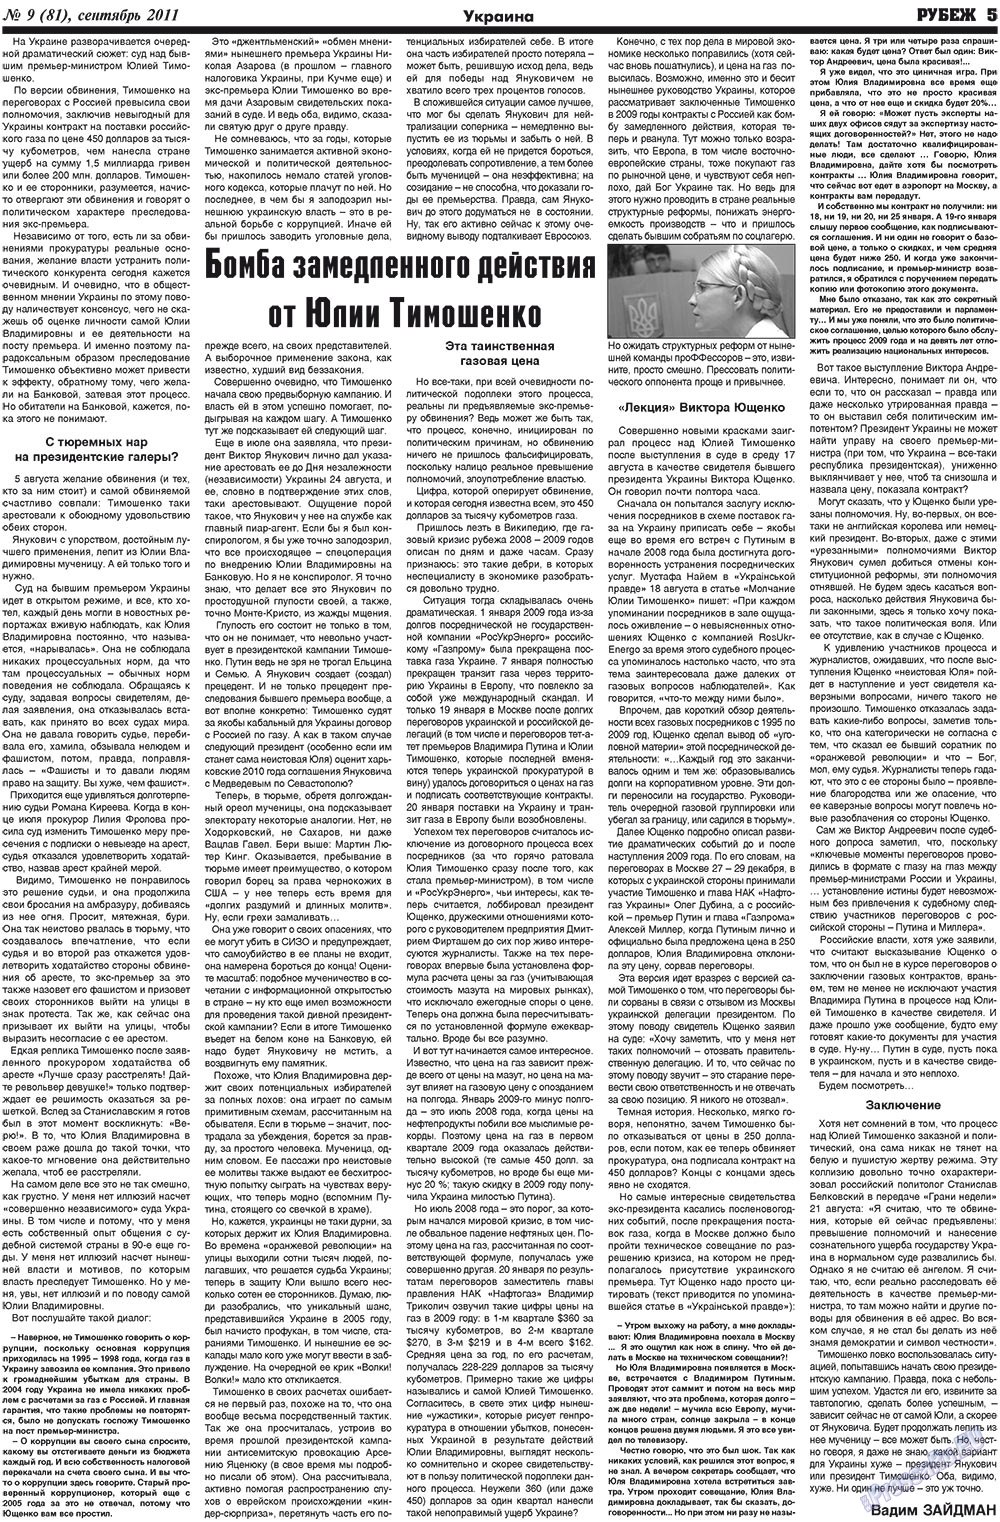 Рубеж (газета). 2011 год, номер 9, стр. 5